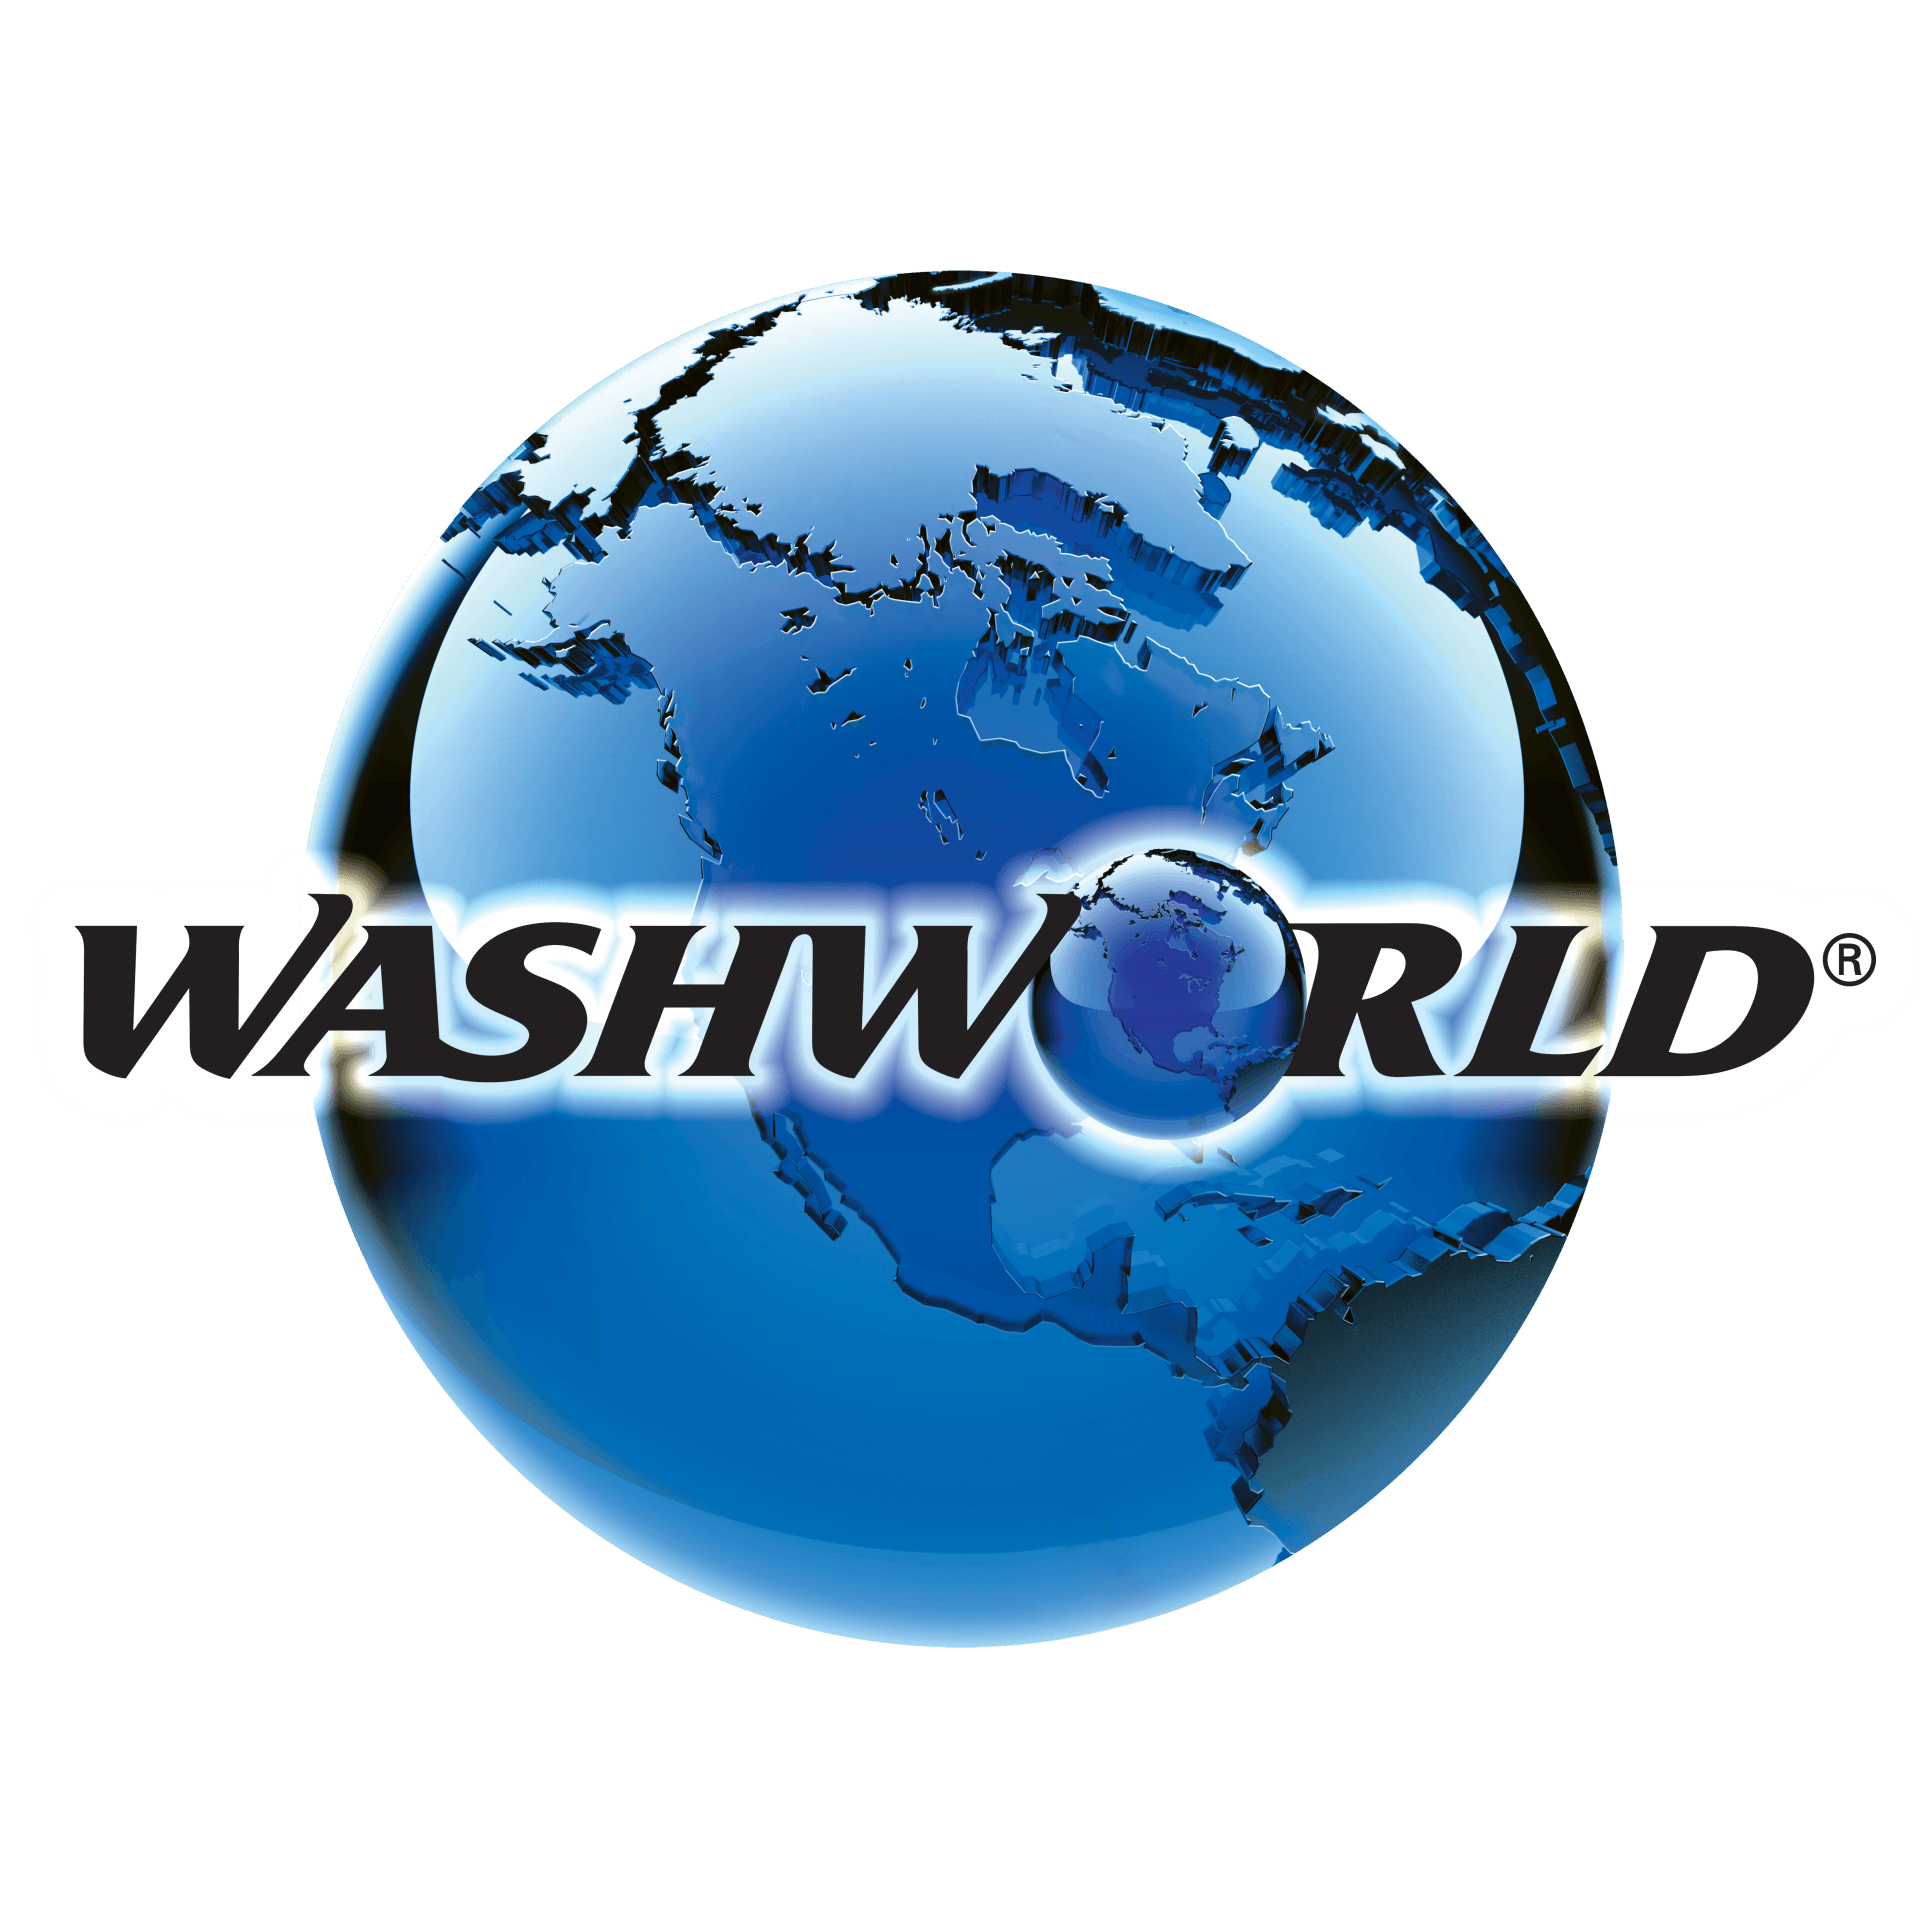 image of washworld's blue globe logo with washworld written on top